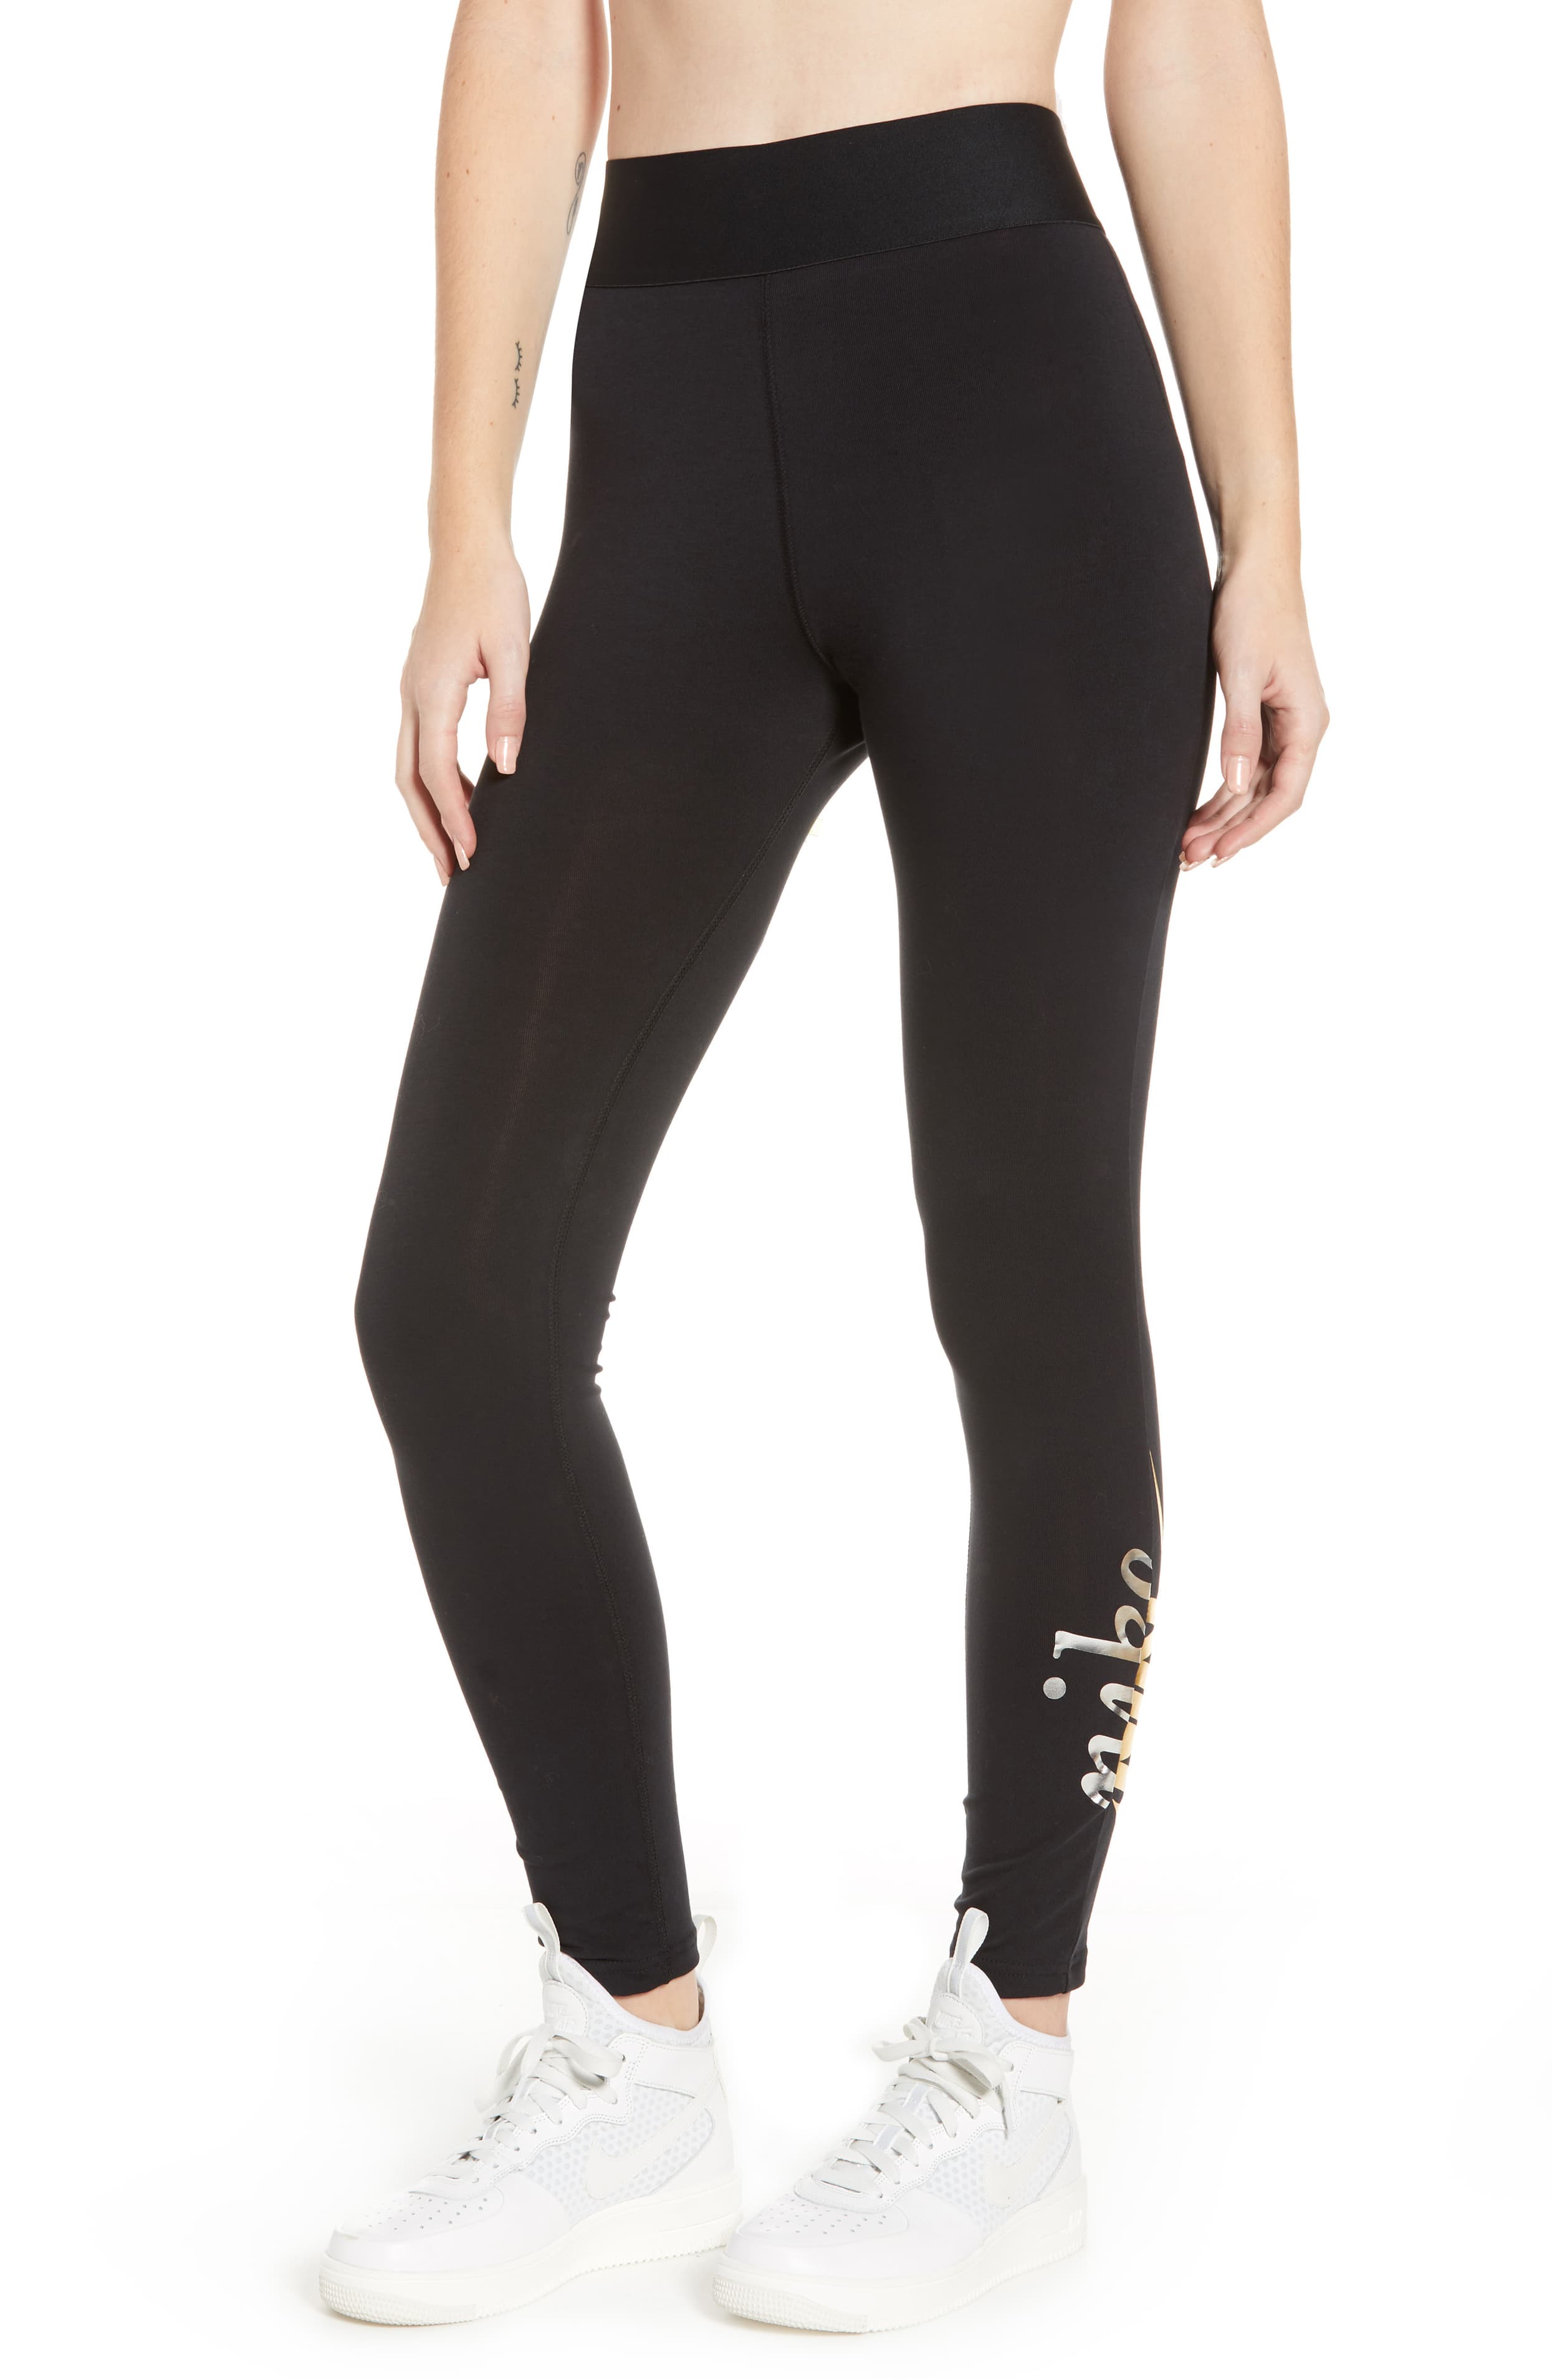 Nike Women's Sportswear Metallic Leggings Black XL